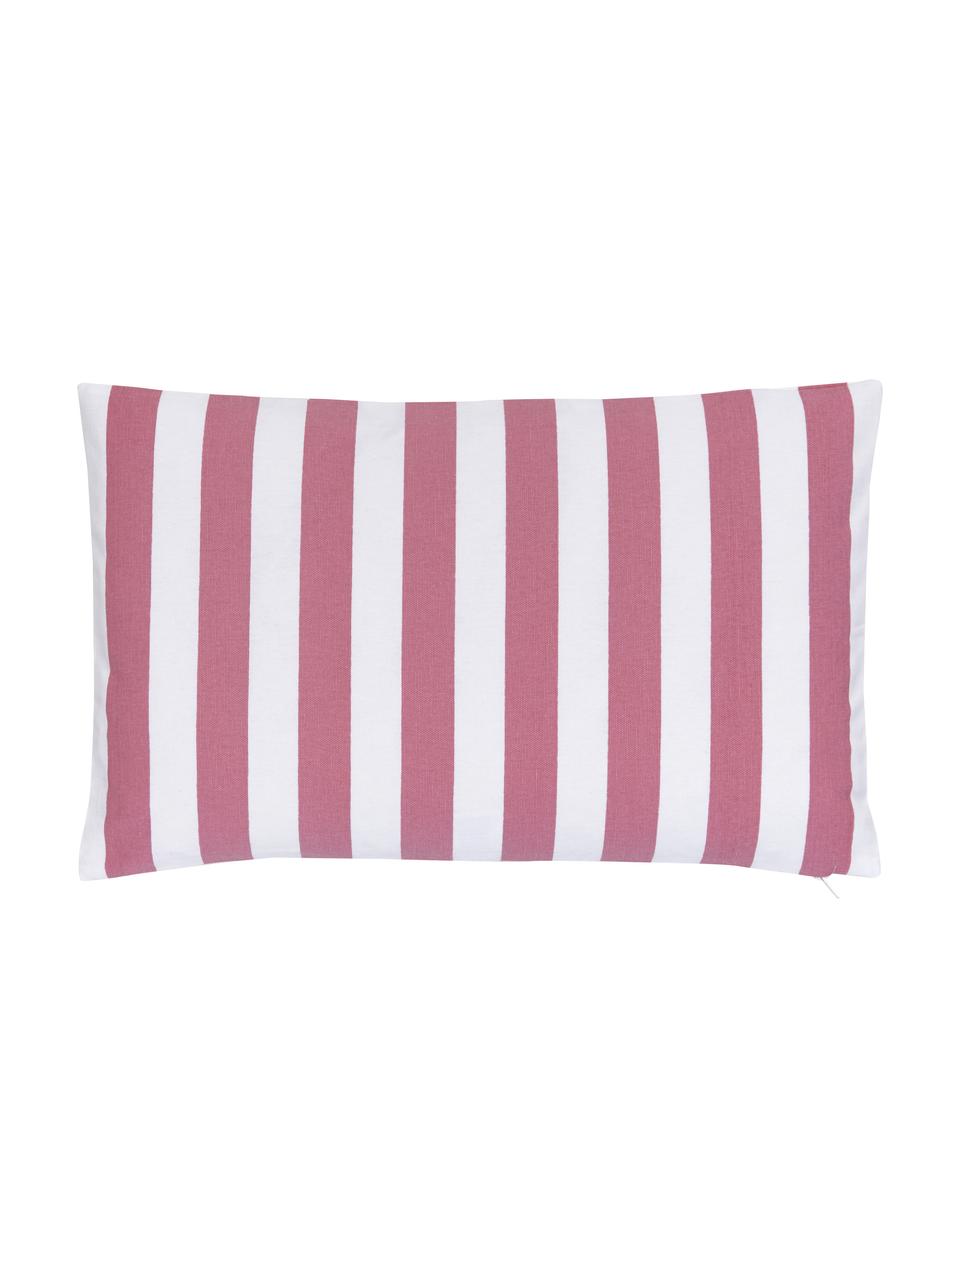 Federa arredo a righe color rosa/bianco Timon, 100% cotone, Rosa, bianco, Larg. 30 x Lung. 50 cm